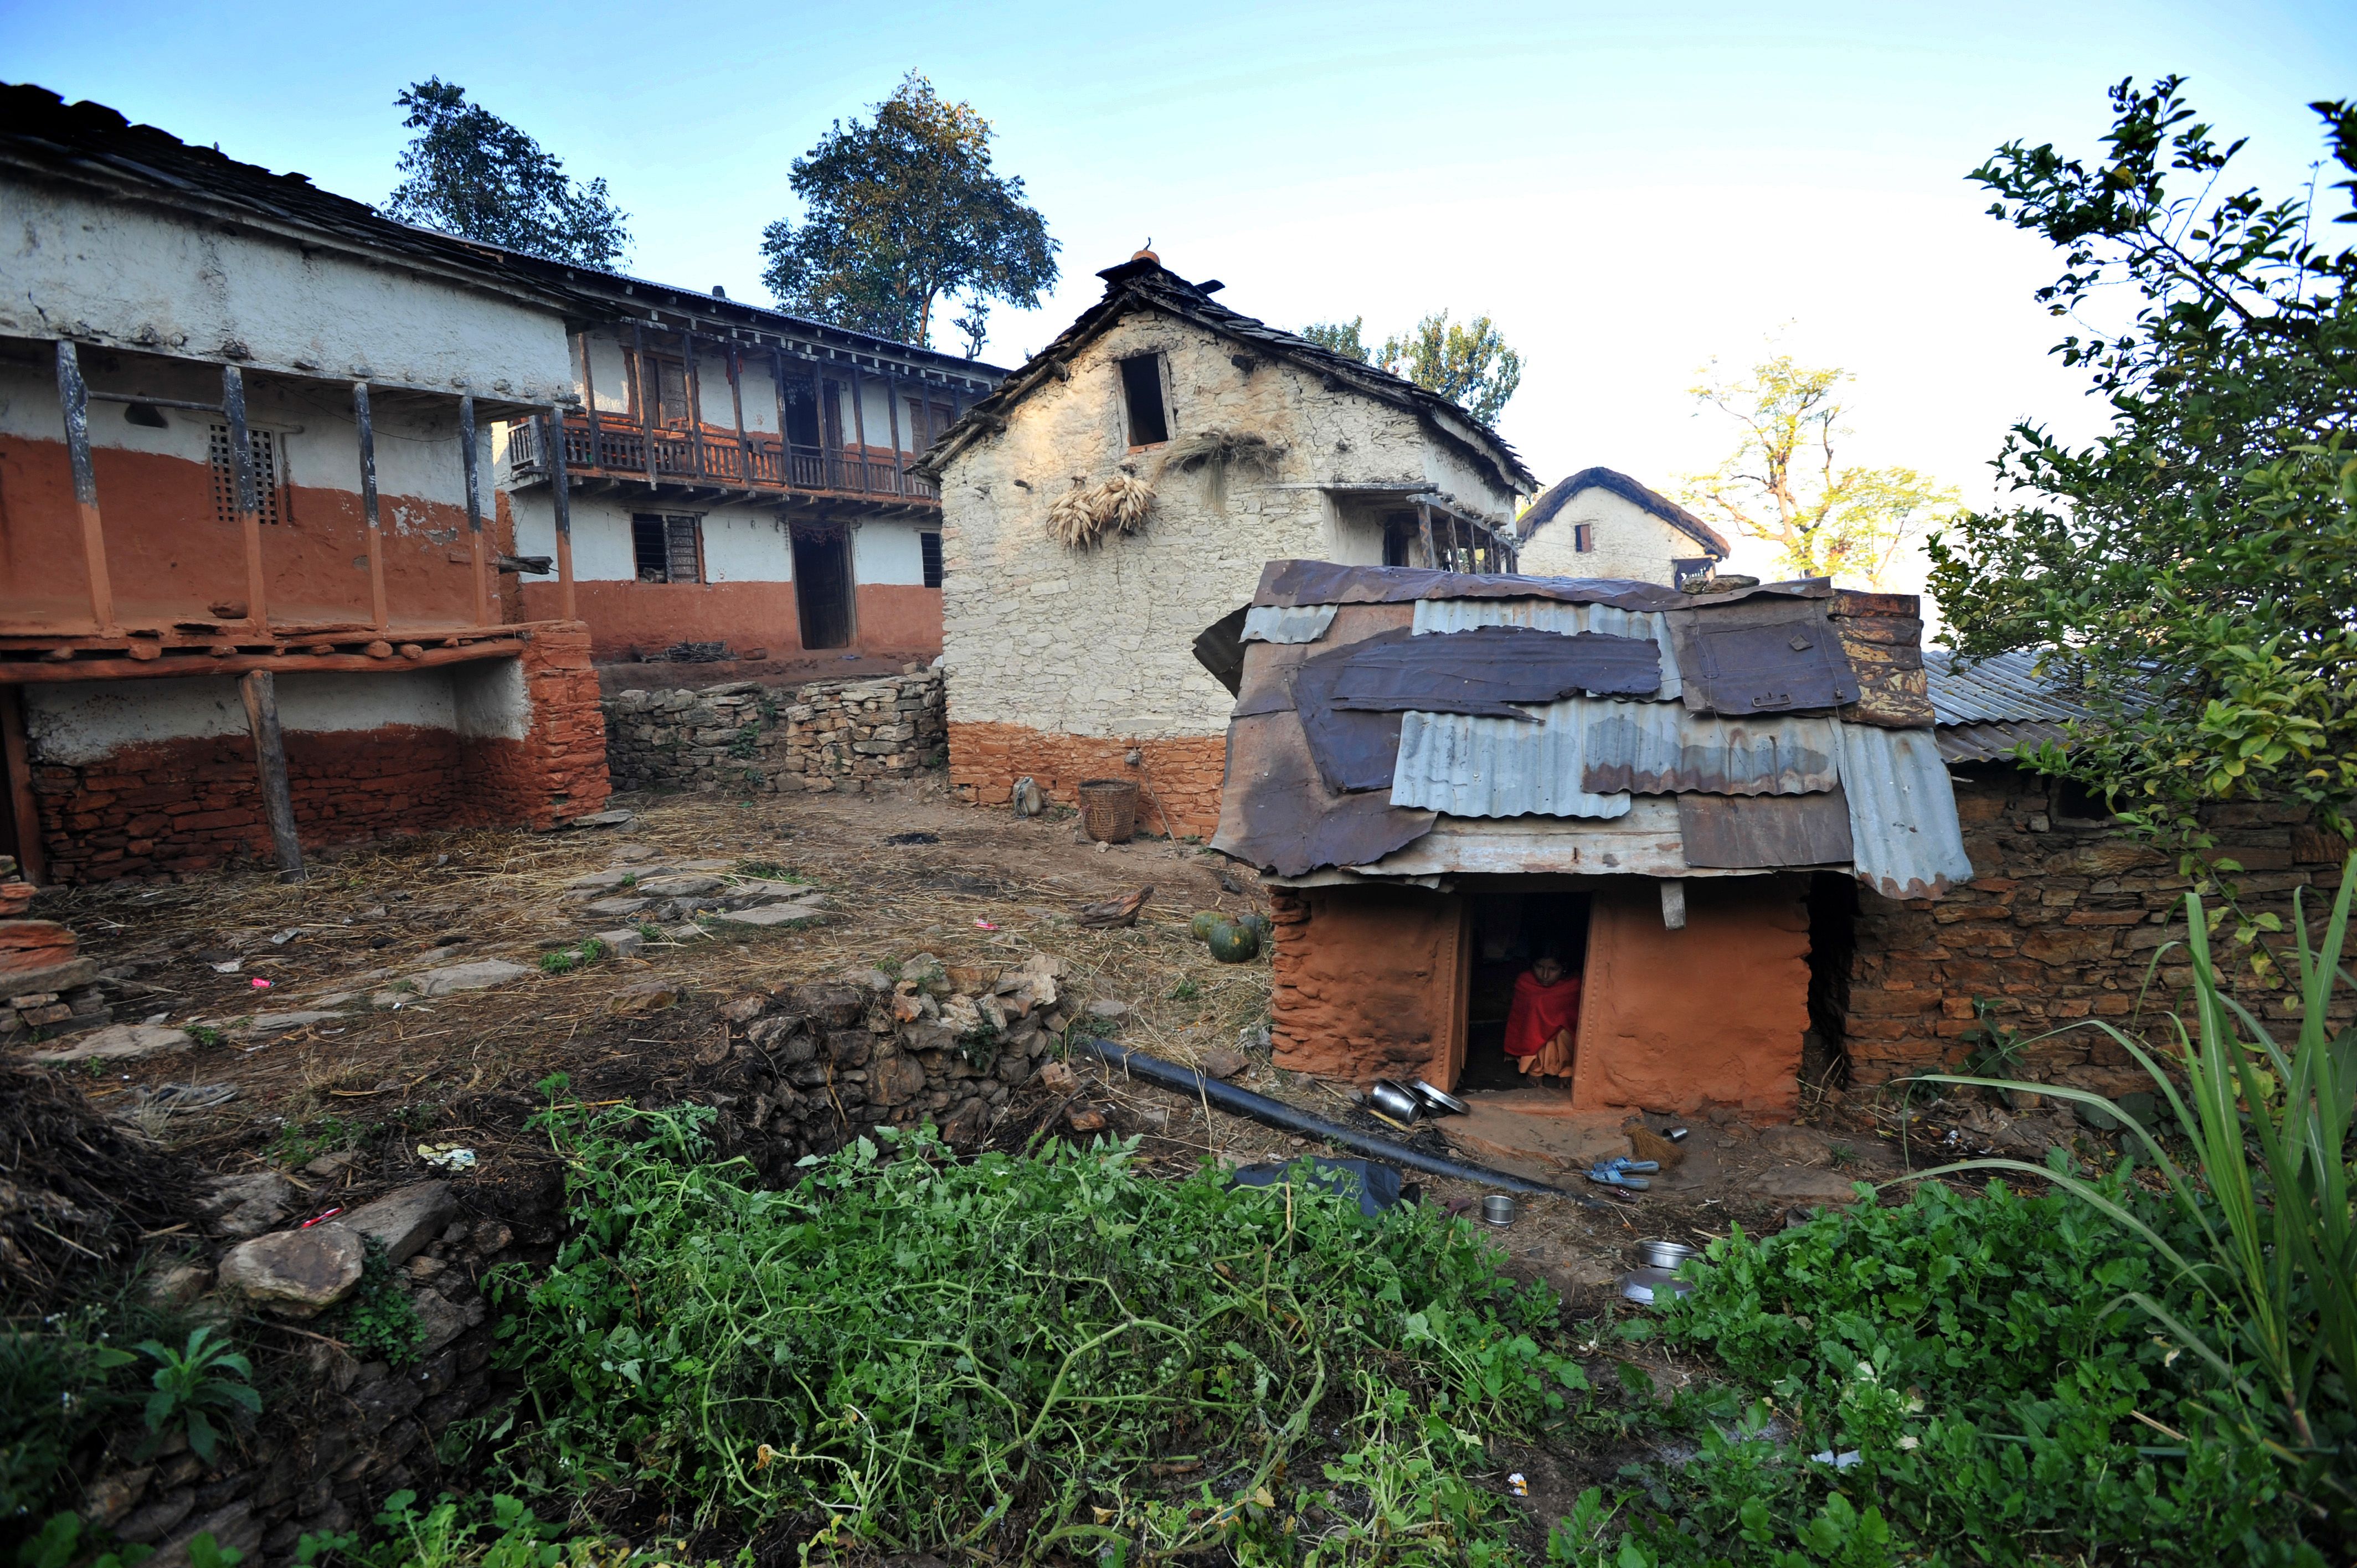 4256px x 2832px - Nepal: 15-year-old girl dies in 'menstruation hut' | CNN